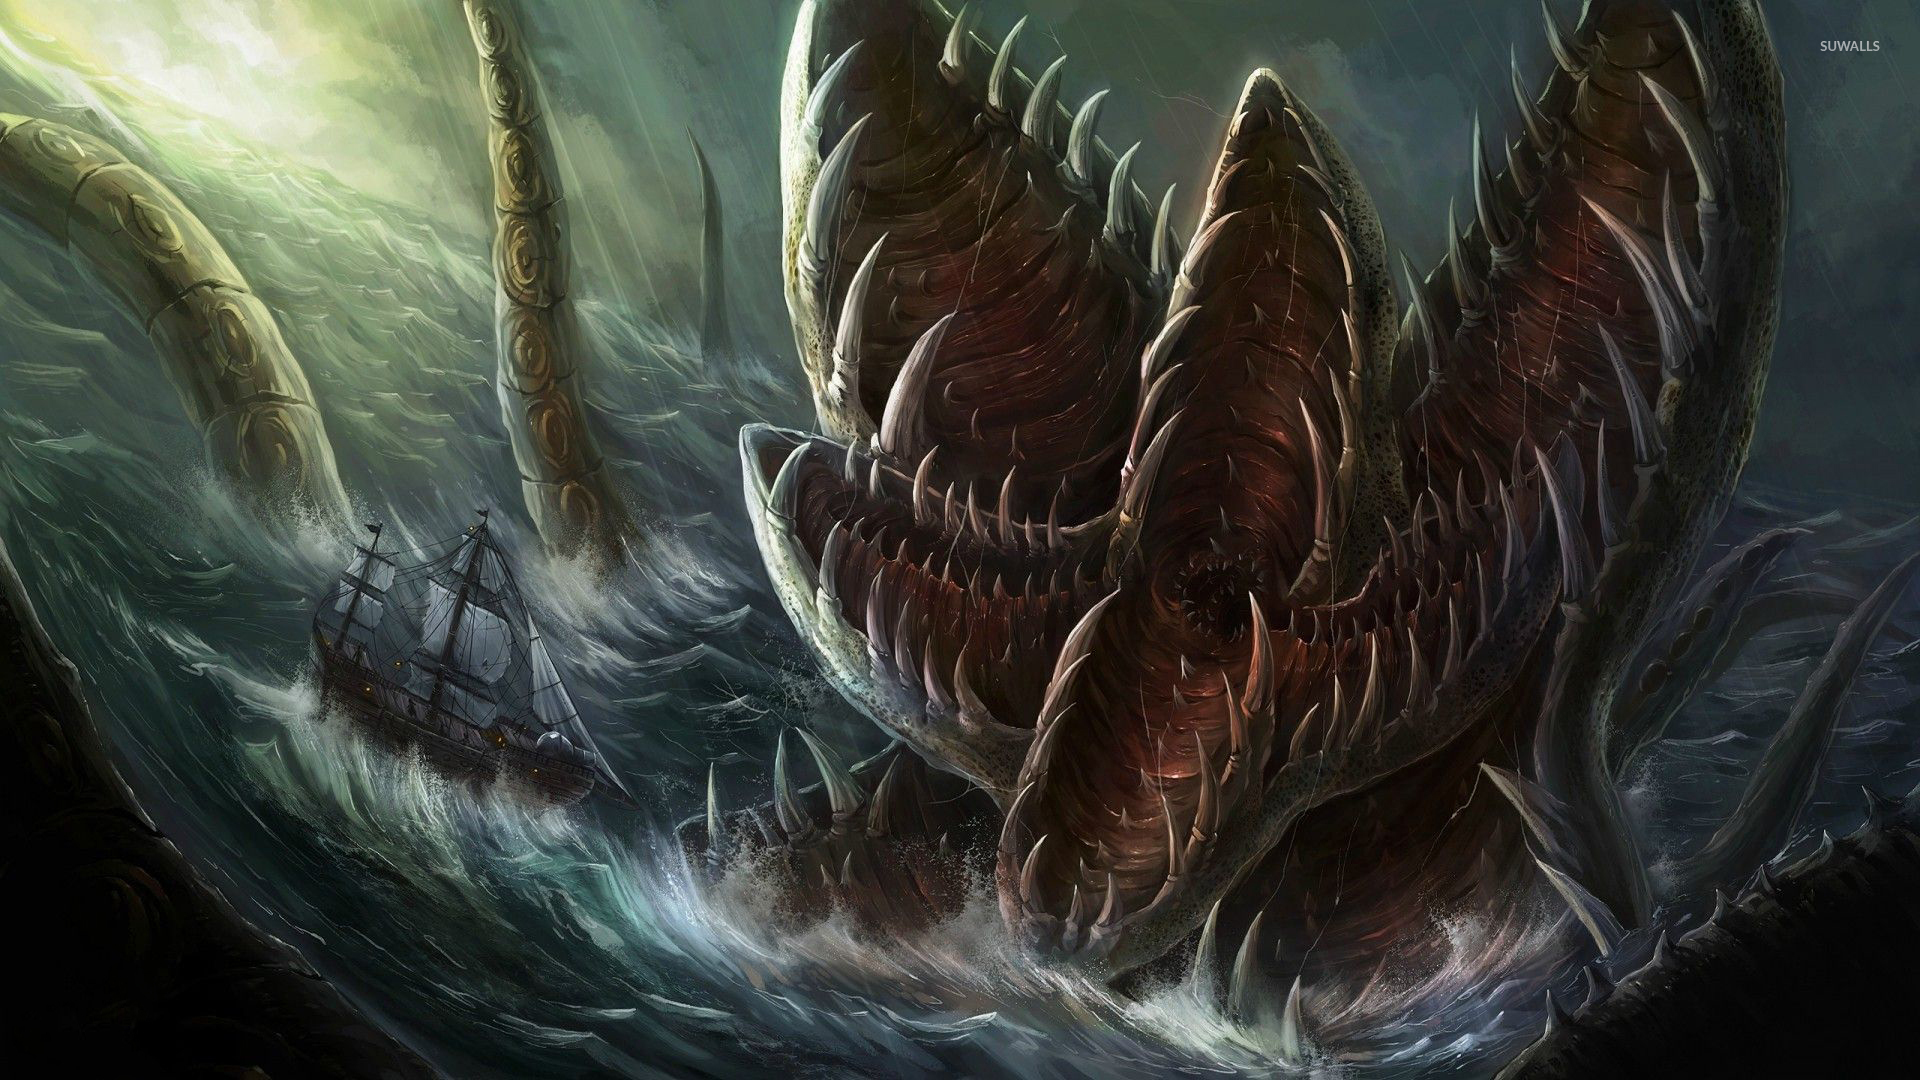 Sea monster attacking the sailing ship wallpaper - Fantasy wallpapers